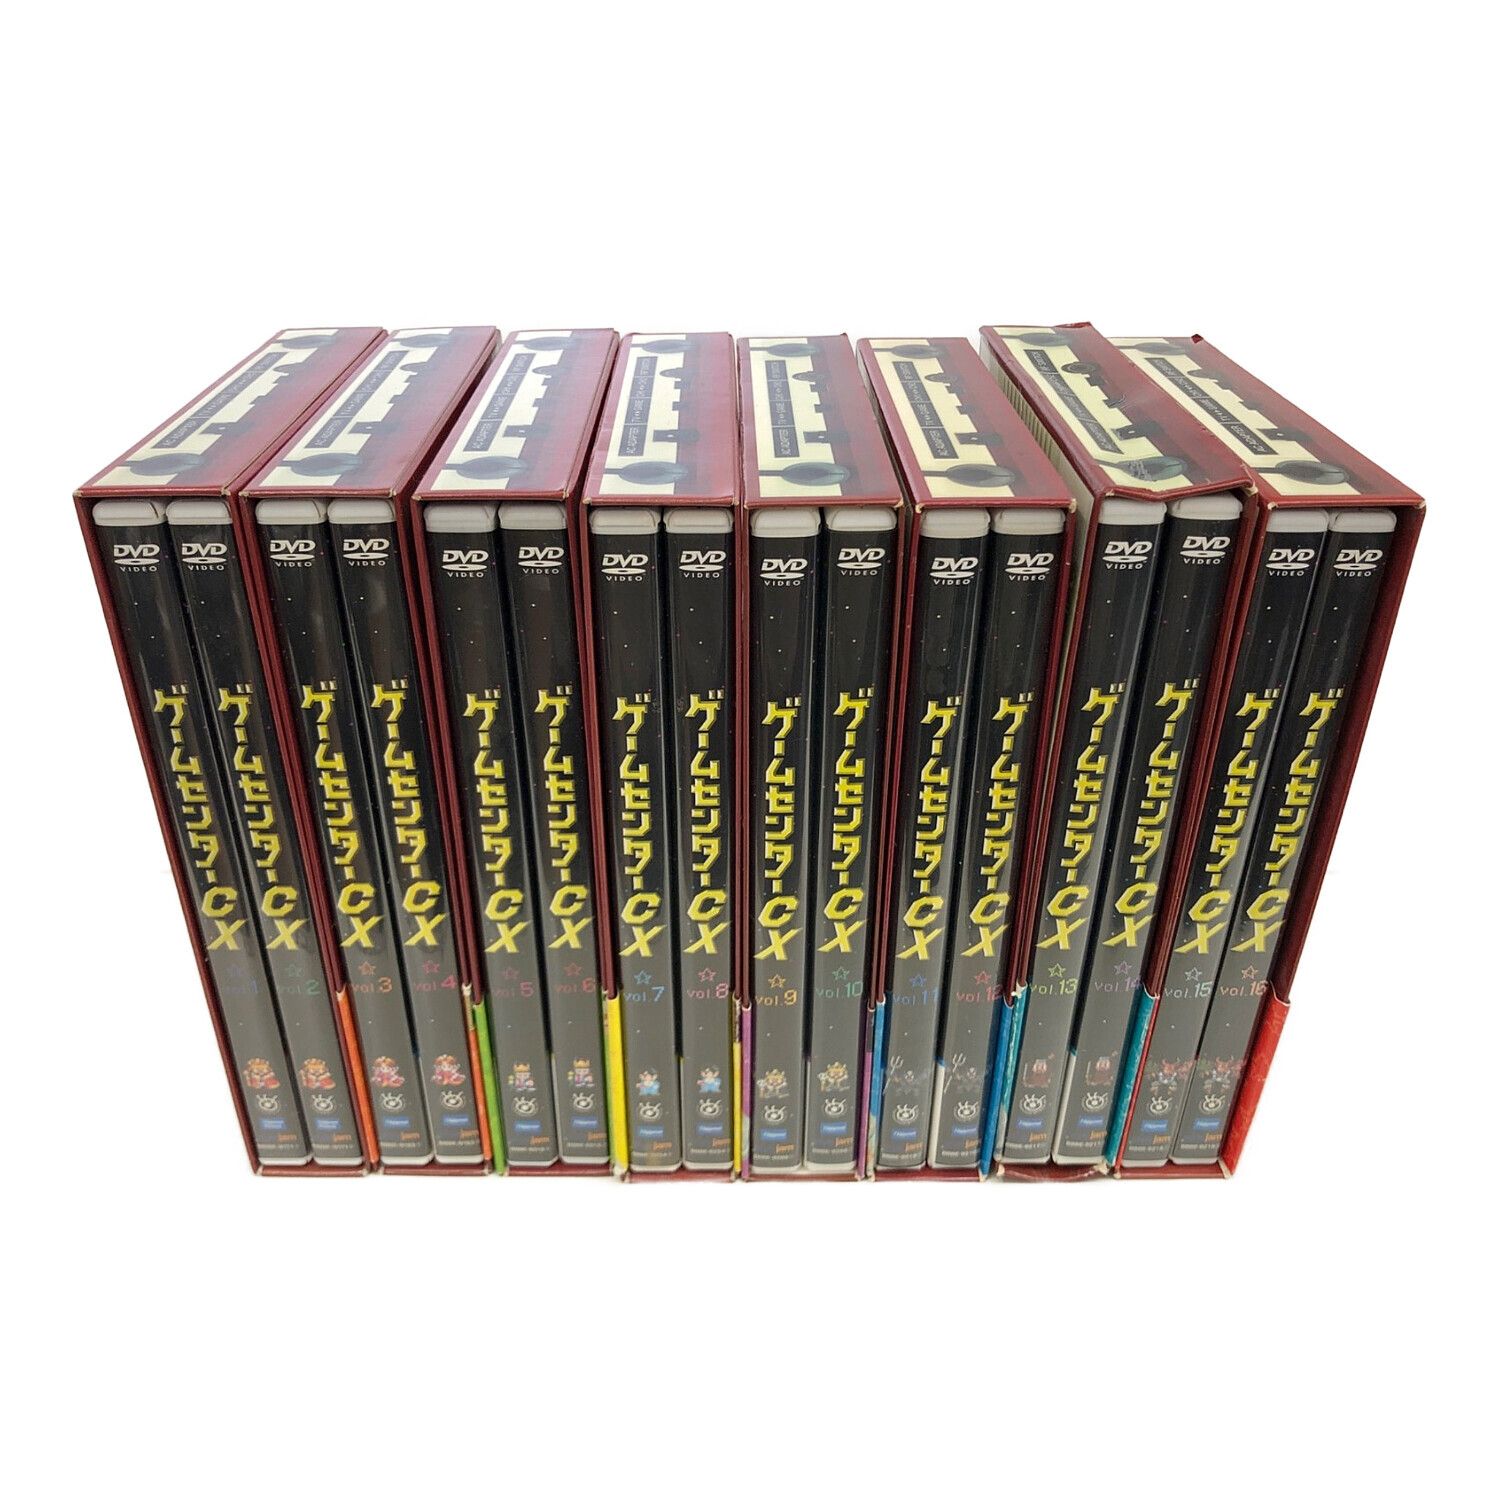 ゲームセンターCX DVD-BOXセット 1〜10.12.13 メガドライブ他 - CD 